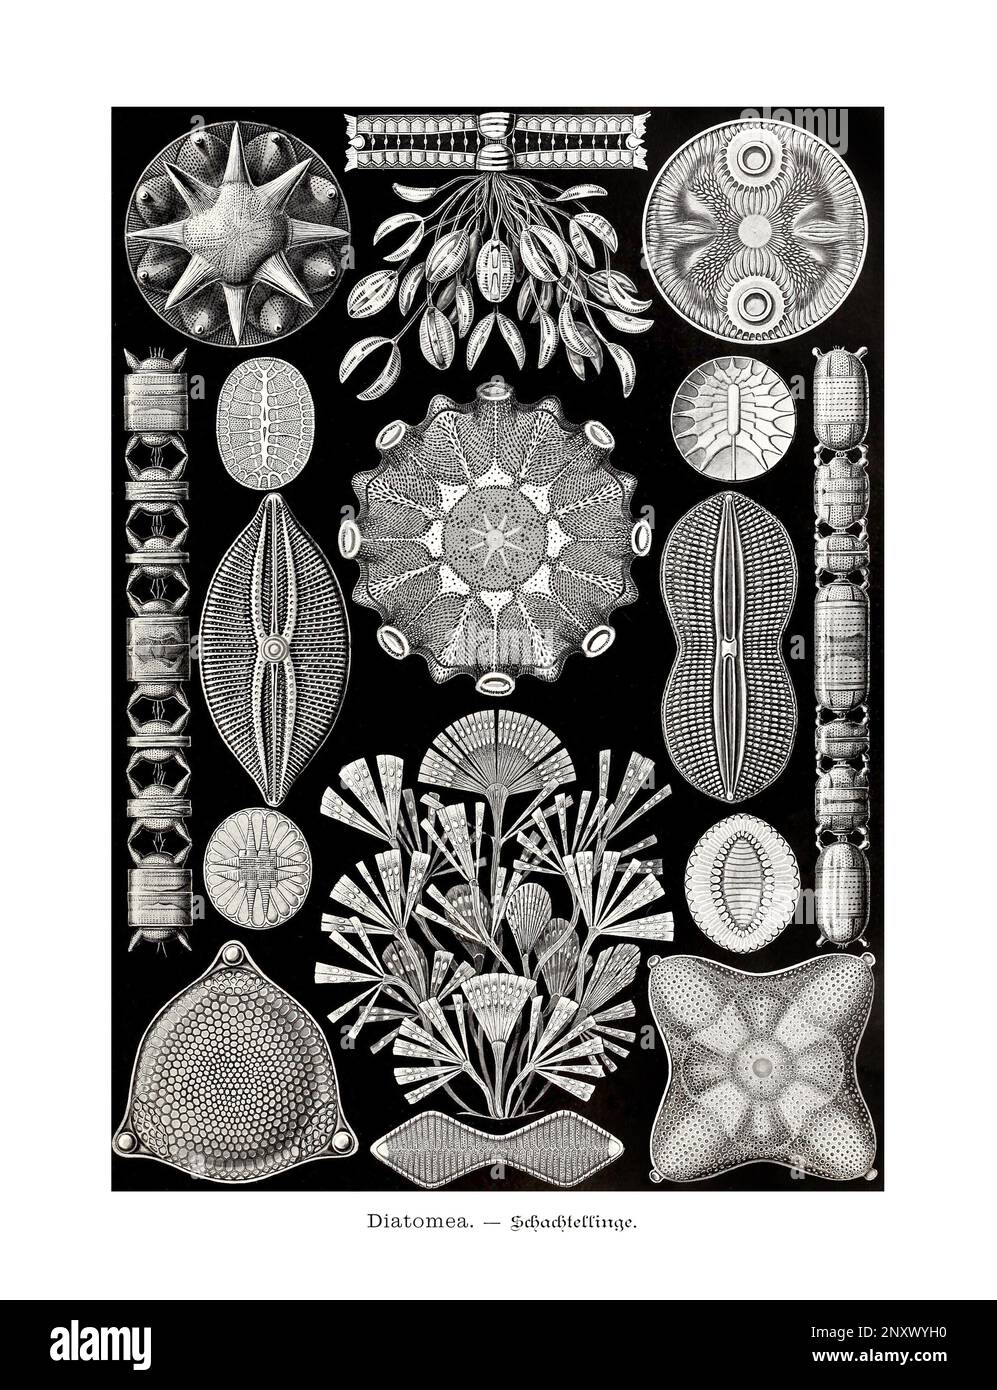 ERNST HAECKEL ART - Diatomea - 19. Jahrhundert - Antike zoologische Illustration - Illustrationen des Buches : "Kunstformen in der Natur" Stockfoto